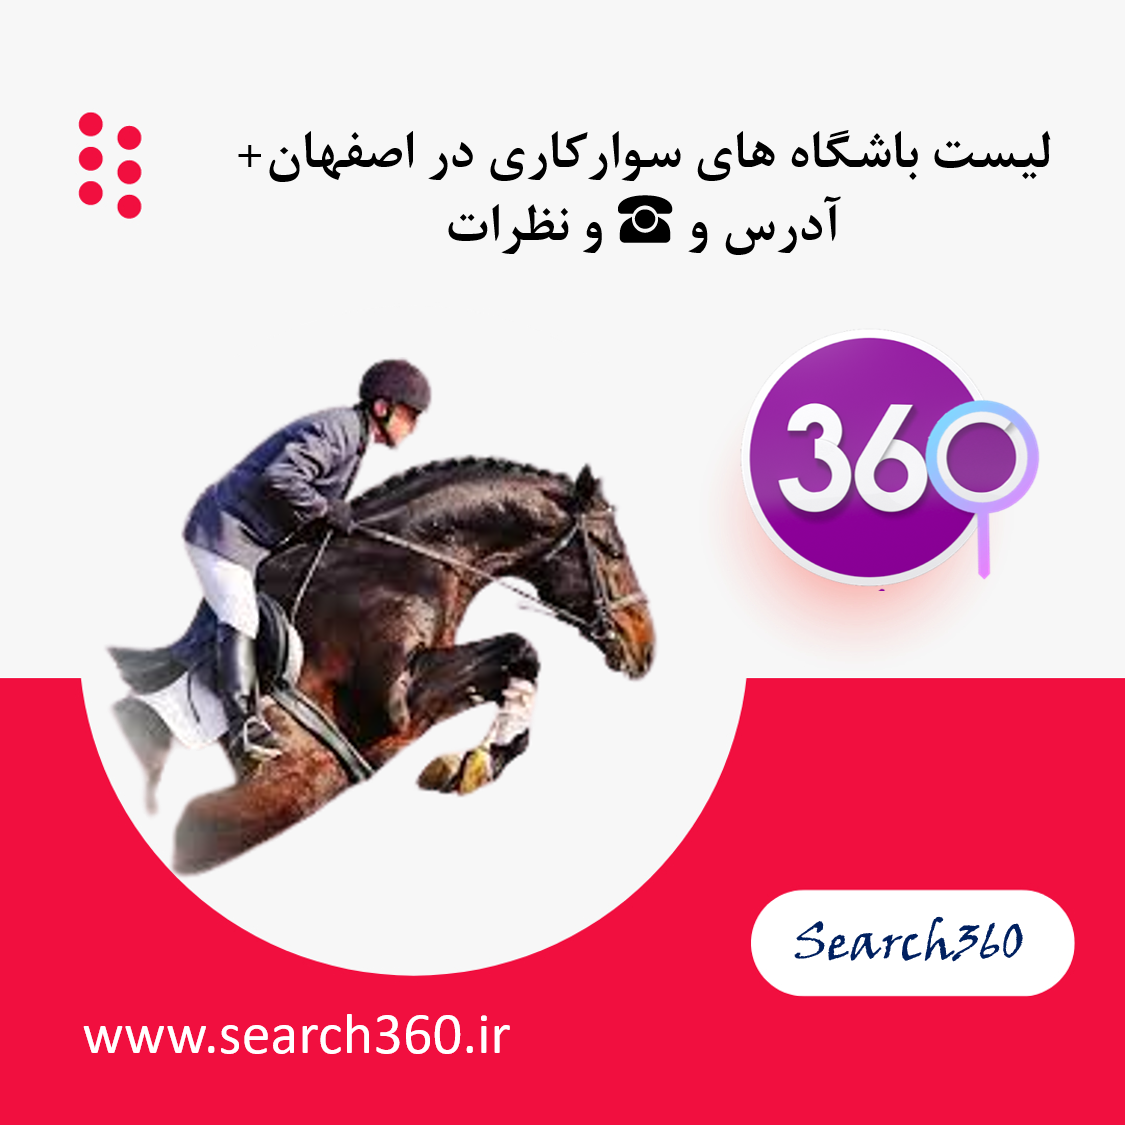 لیست باشگاه های سوارکاری اصفهان با آدرس و تلفن ☎️